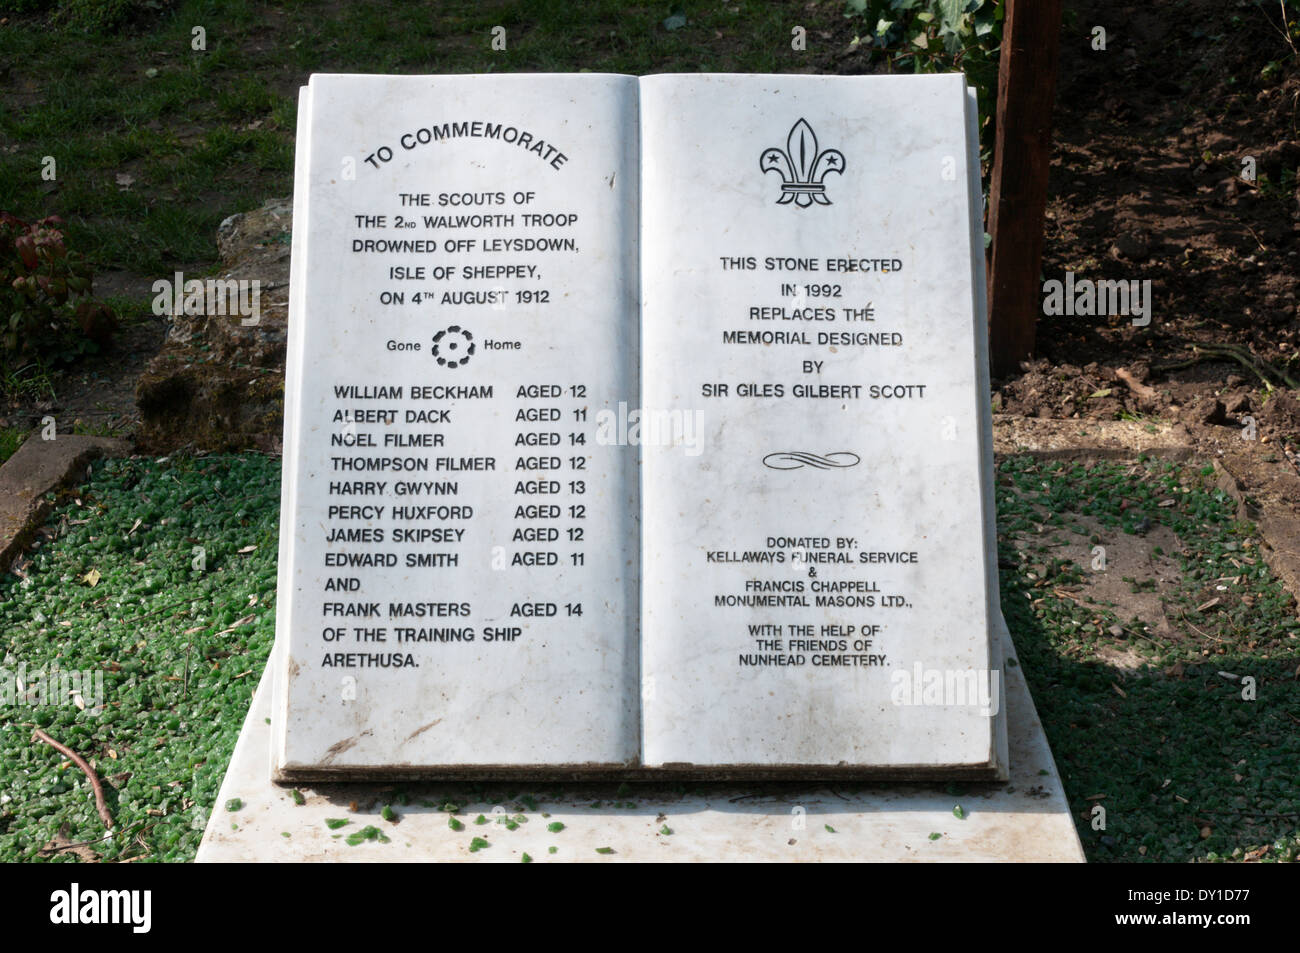 Ein Denkmal in Nunhead Friedhof an eine Gruppe von Pfadfindern in der Leysdown Tragödie getötet. SIEHE BESCHREIBUNG FÜR DETAILS. Stockfoto